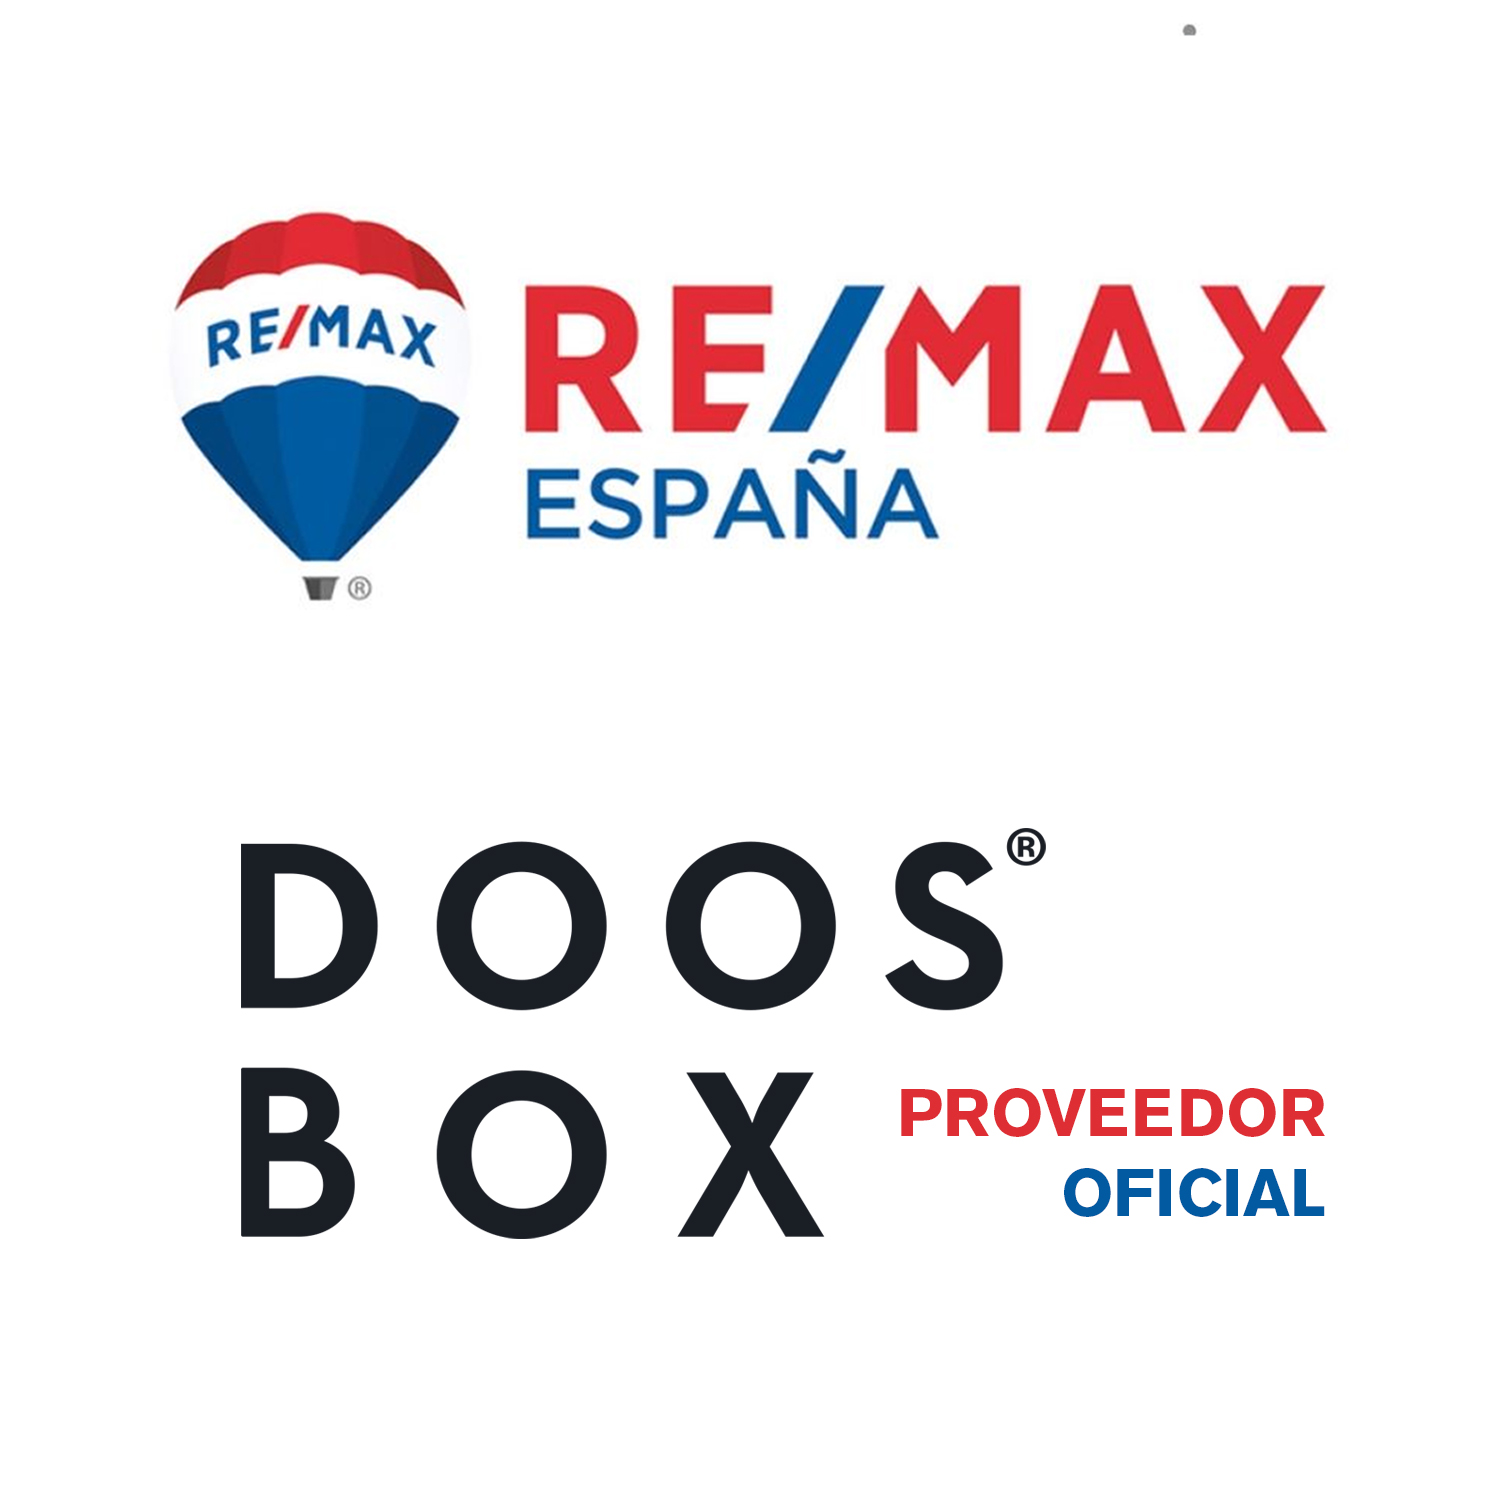 DOOS BOX proveedor oficial de RE/MAX España